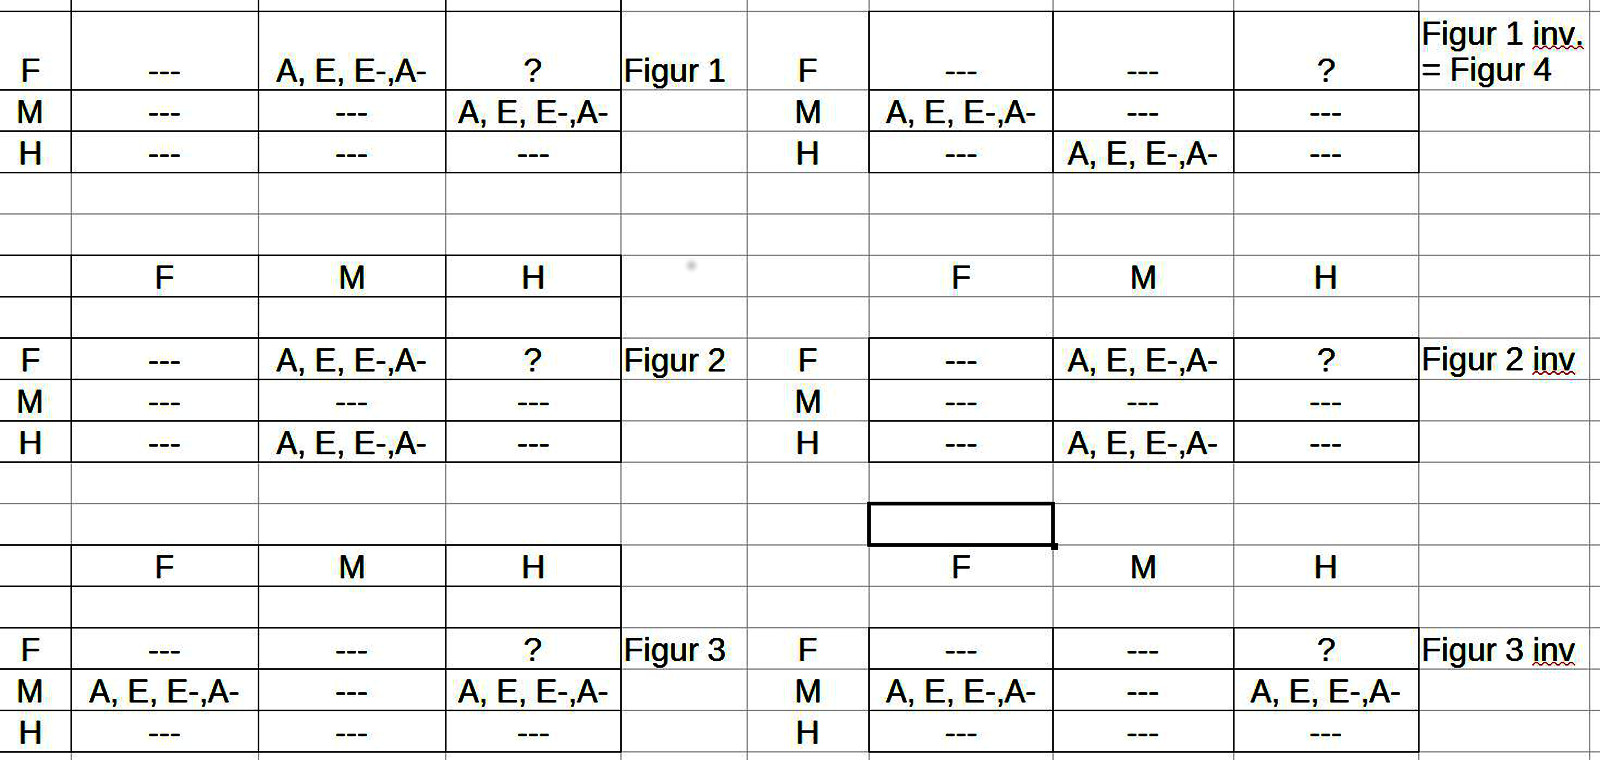 Gesamtübersicht Schlussfiguren 1-3 samt ihren Inversen und die Verteilung der Quantoren für jede Schlussfigur